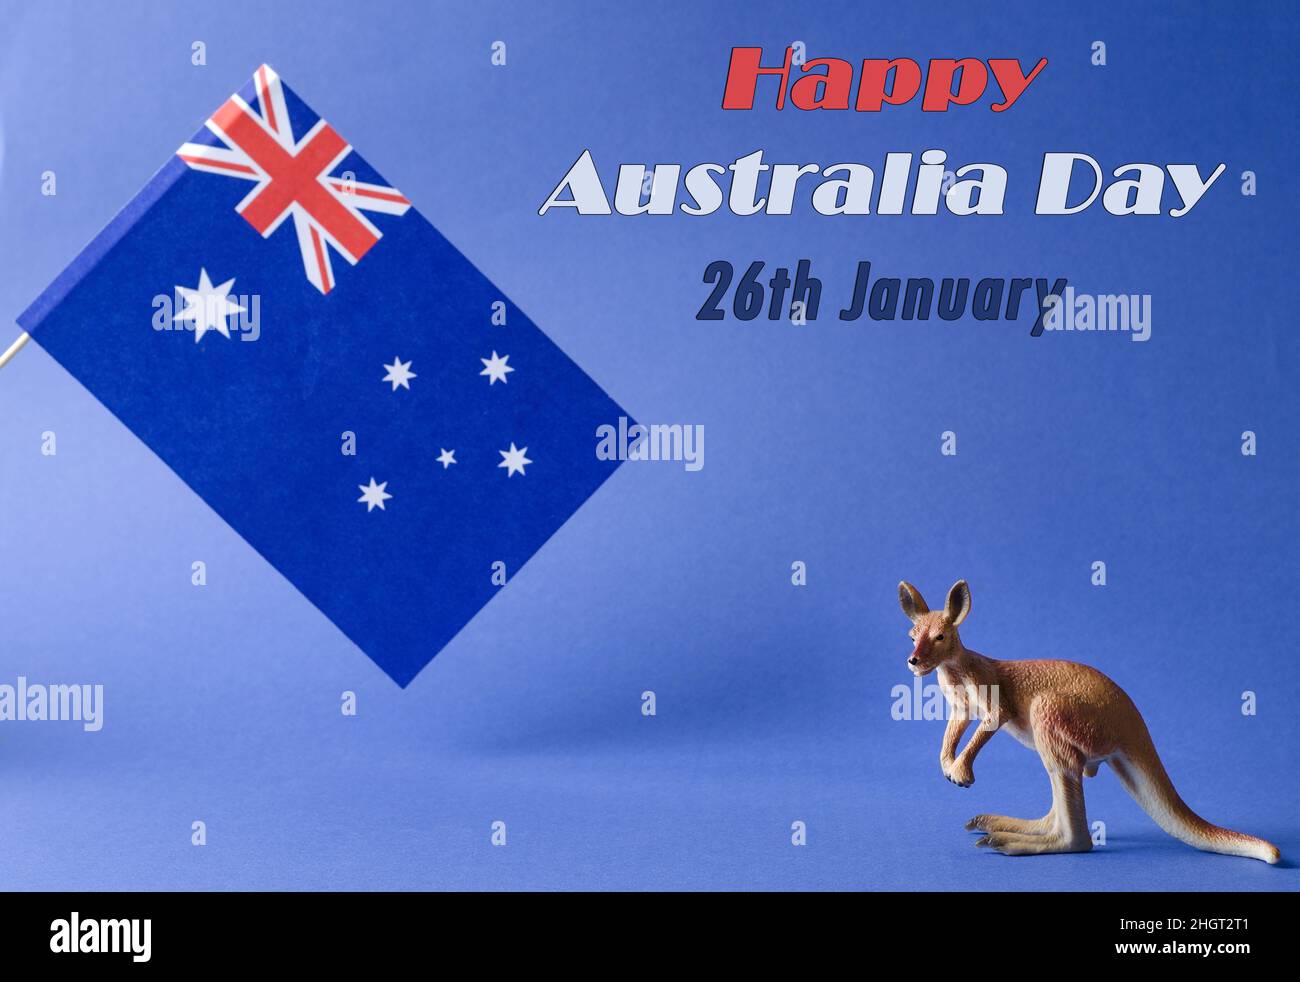 Am 26. Januar ist der Australia Day oder Anzac Day. Nationalflagge und Känguruh-Figur auf blauem Hintergrund mit der Inschrift des Happy Day of Australia Stockfoto